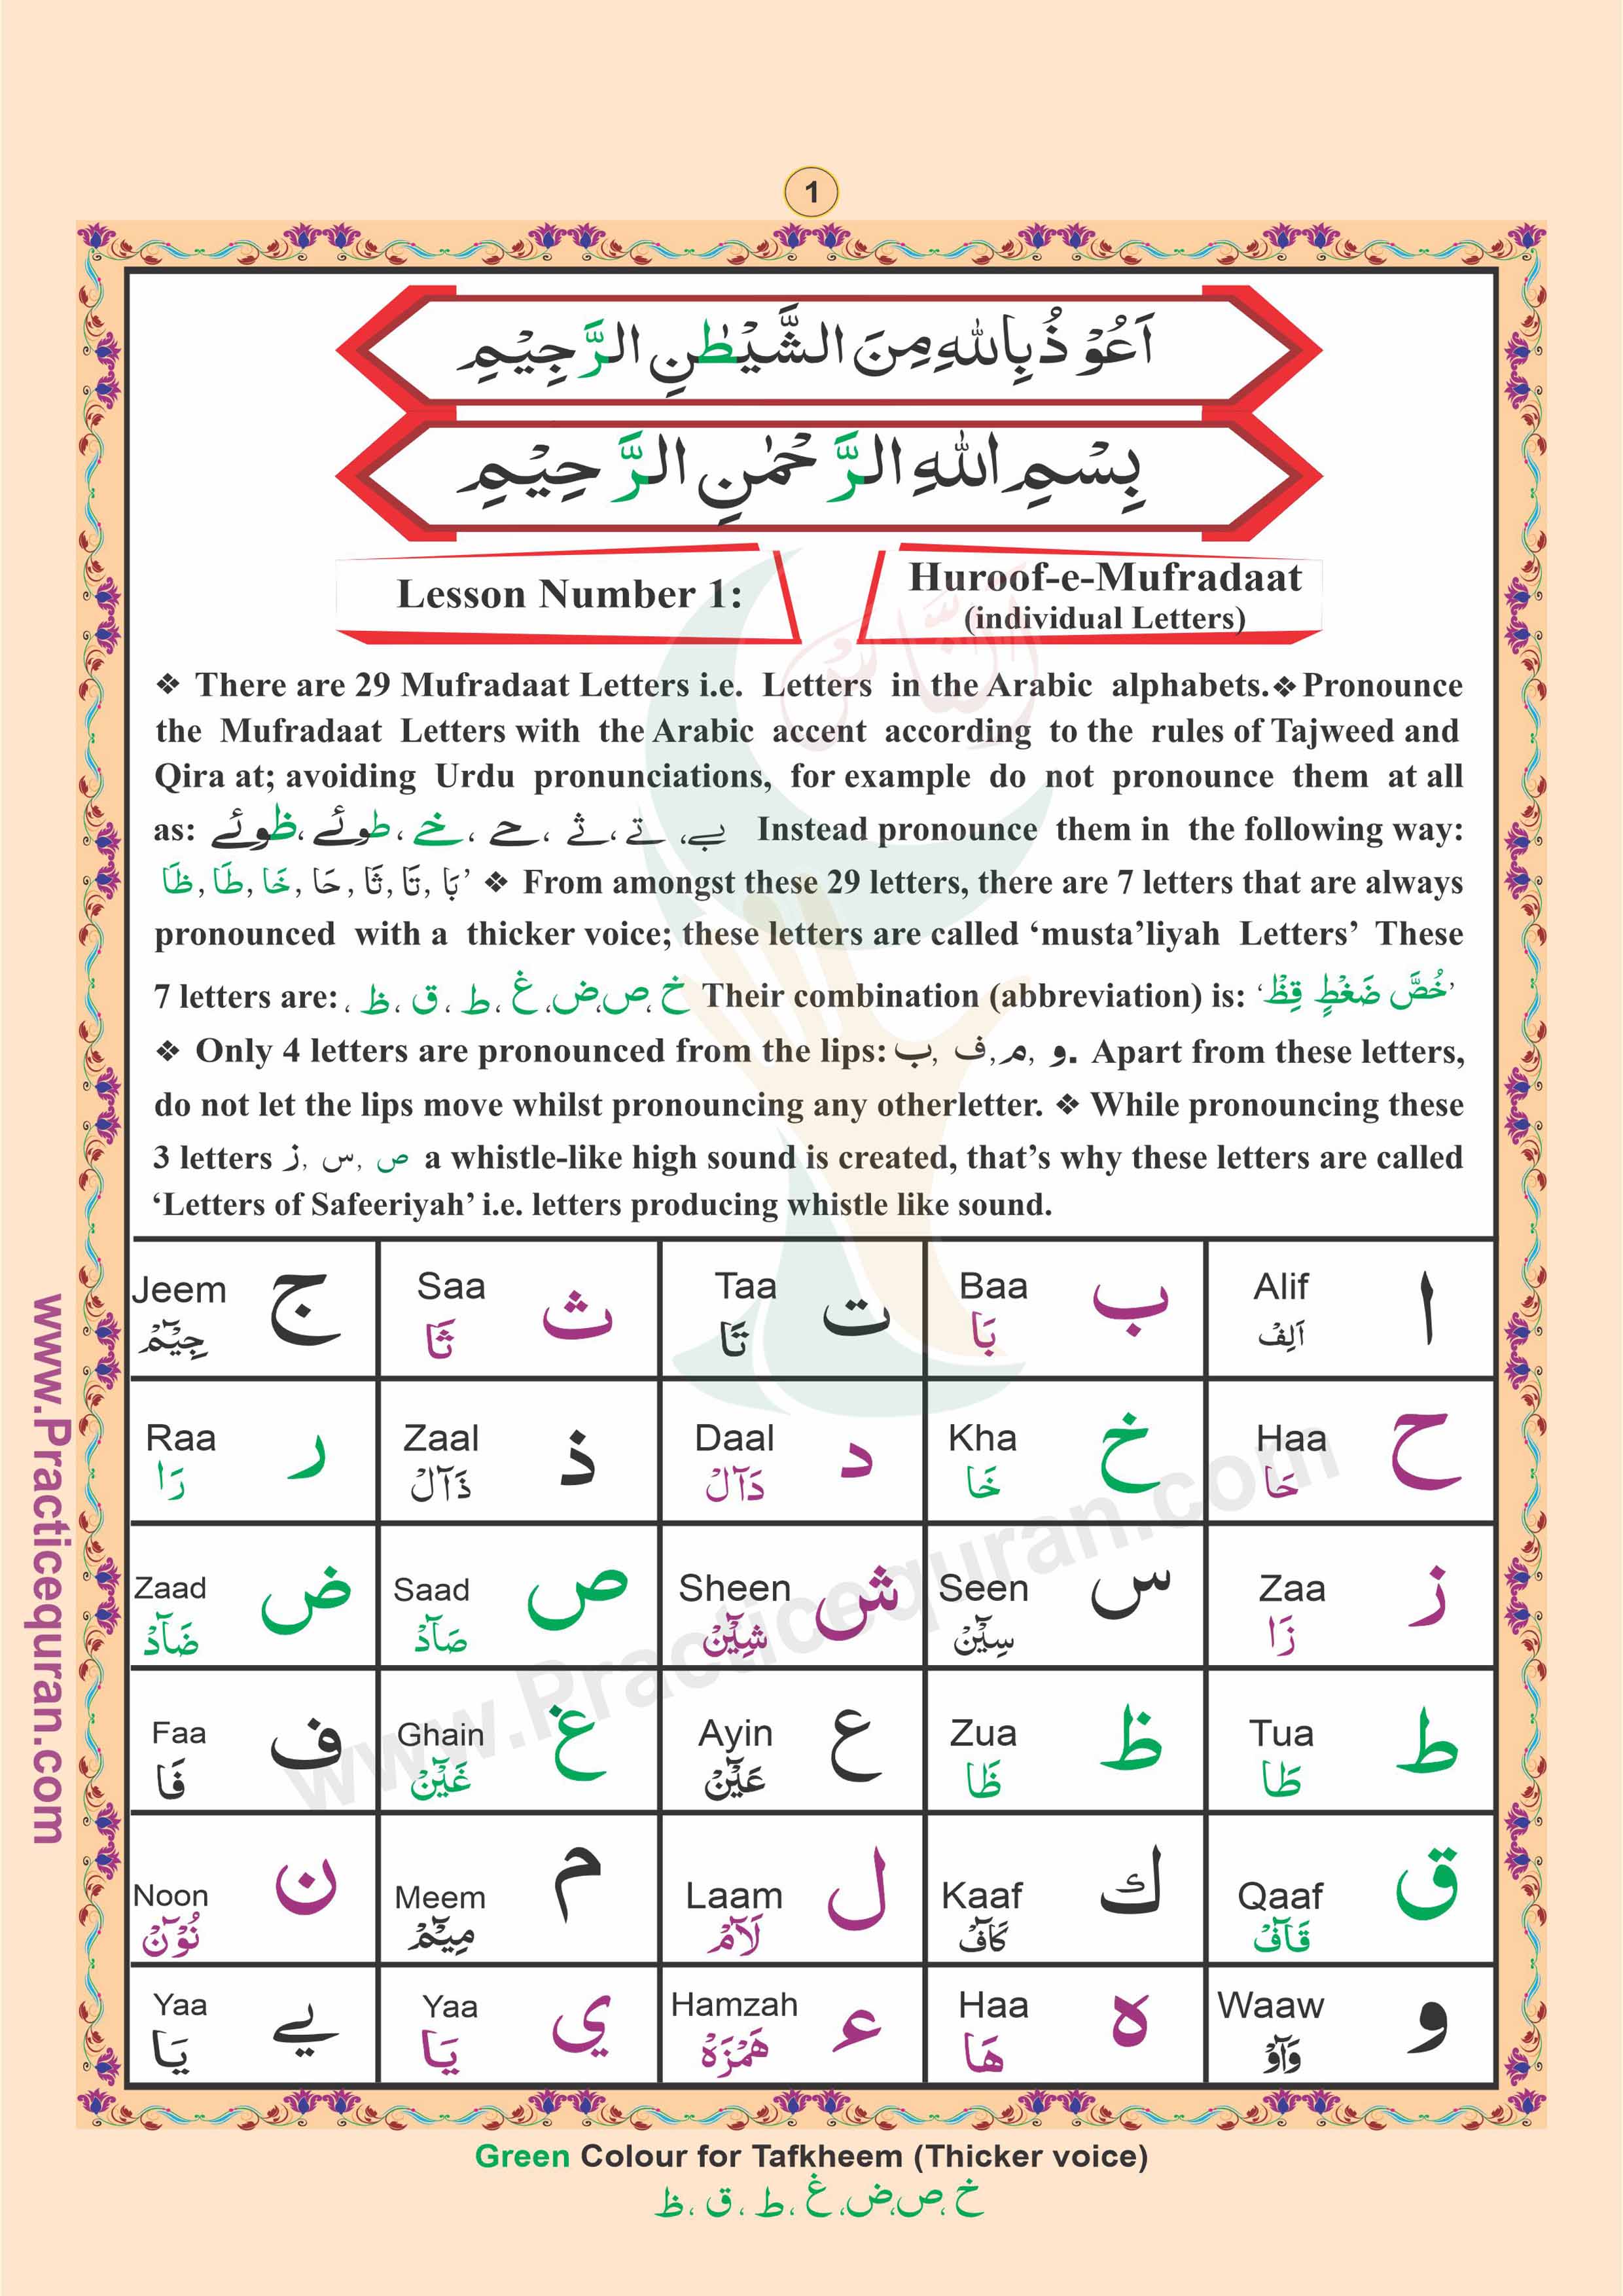 Read English Noorani Qaidah Page No 1, Practice Quran